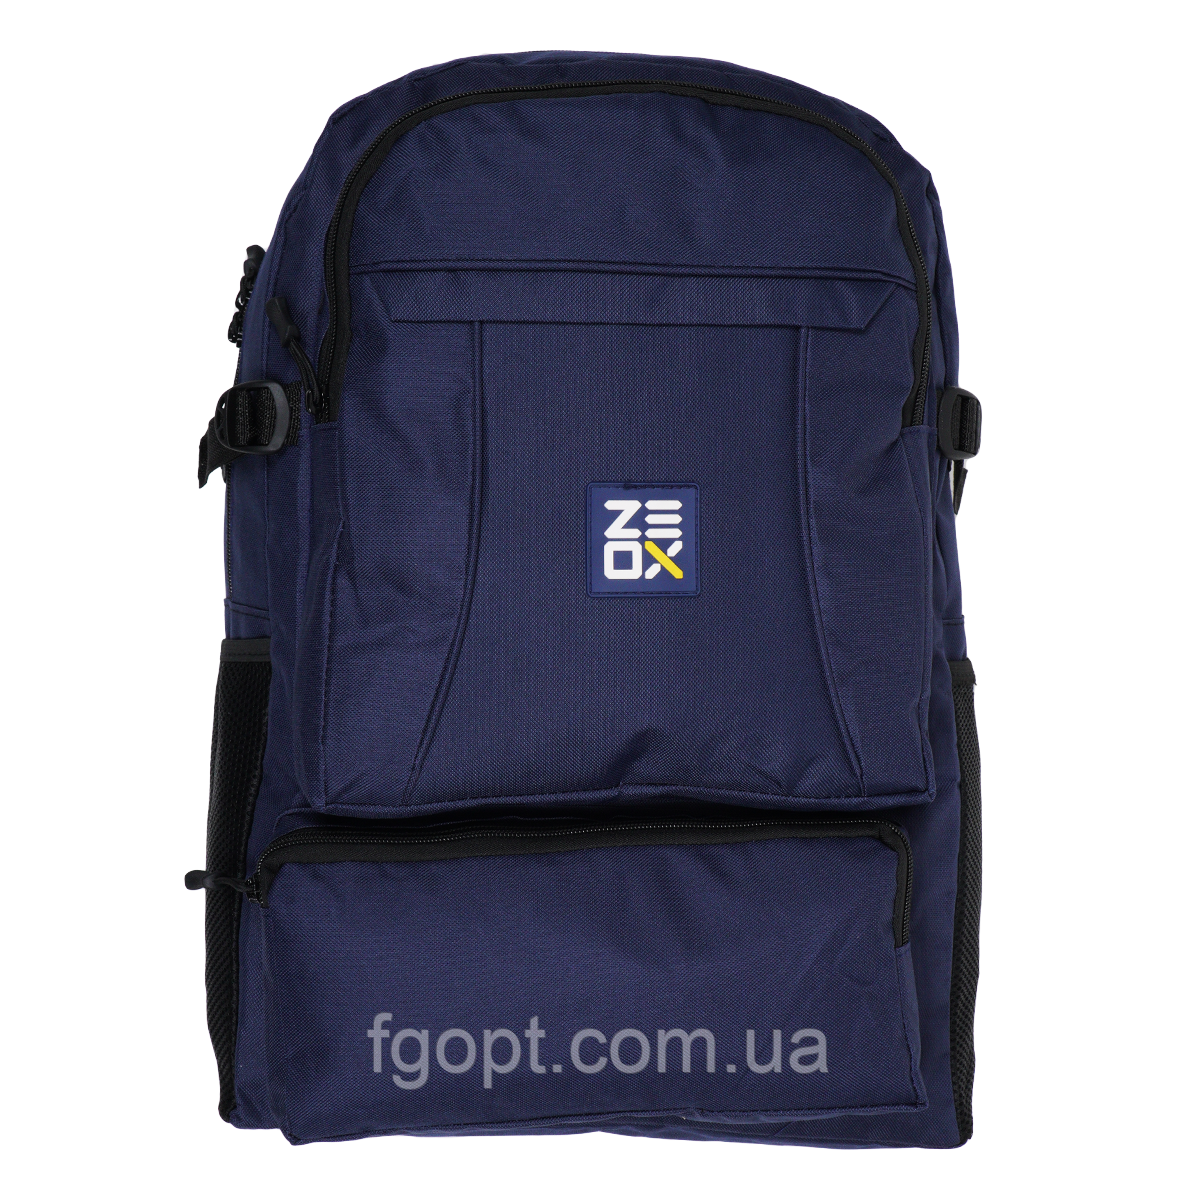 Рюкзак Zeox Classic Backpack 30L NEW 2022